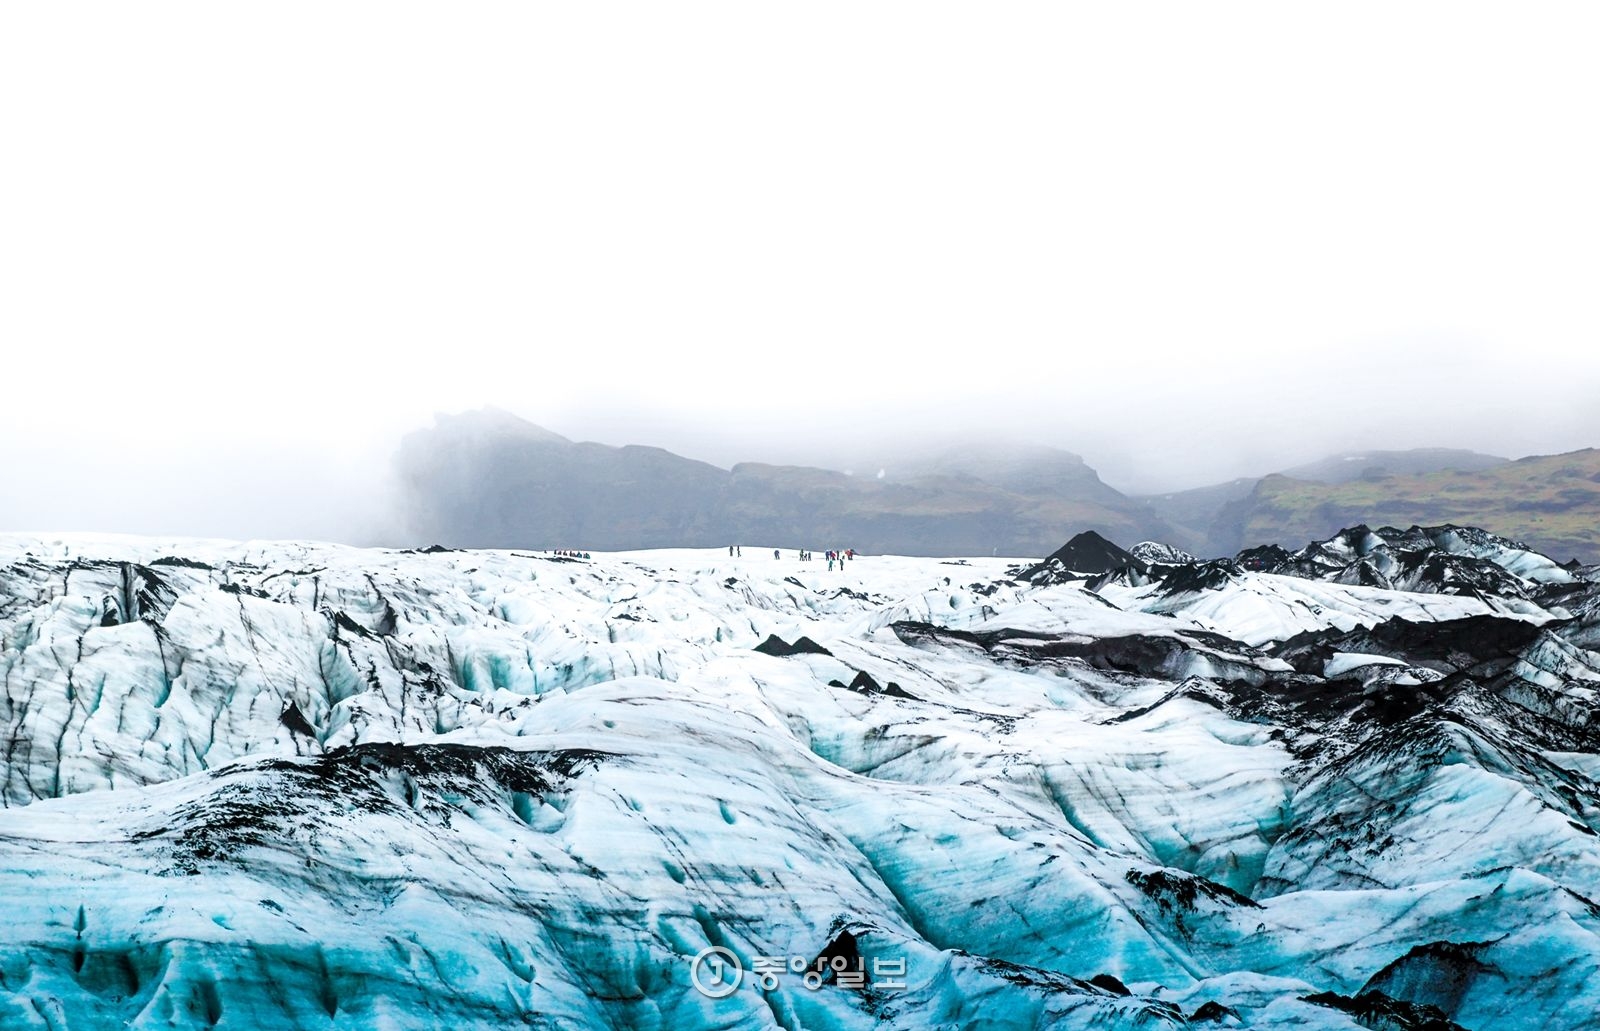 아이슬란드 남부 빙하지대 중 한 곳인 솔헤이마요쿨. 거대한 빙하를 걷고 있는 사람들이 점처럼 작게 보인다.